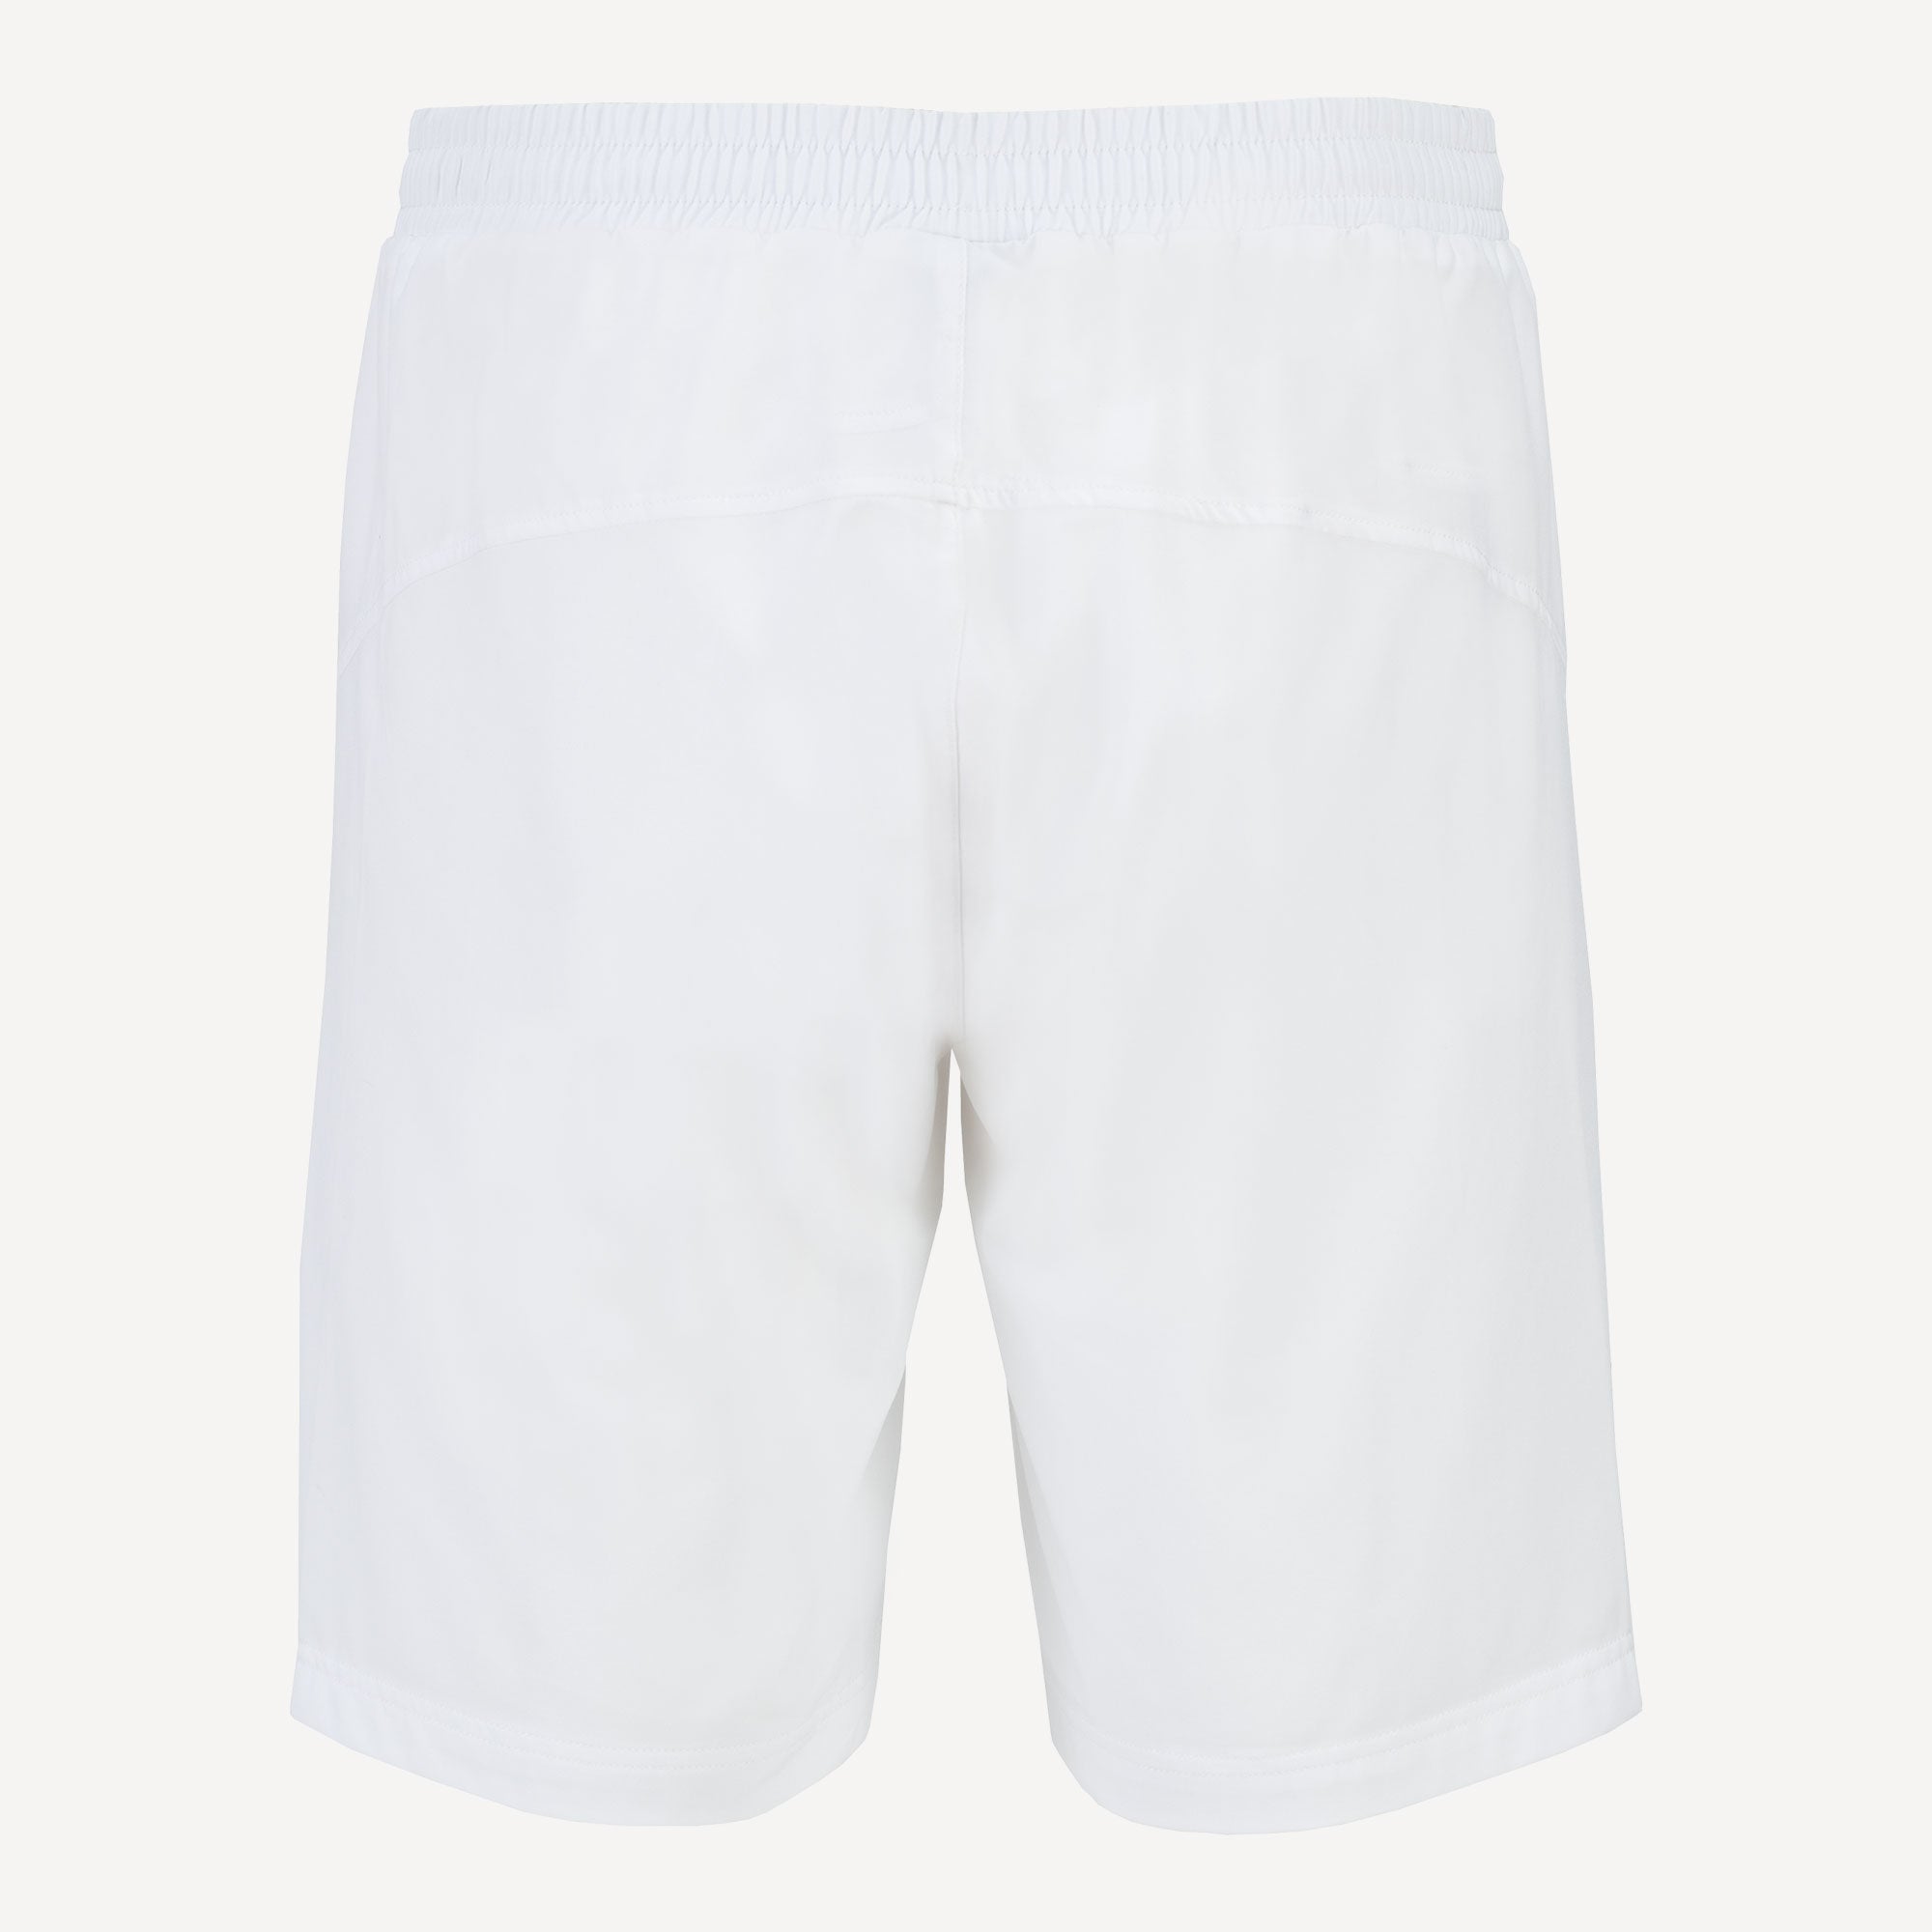 Fila Santana Men's Tennis Shorts White (2)